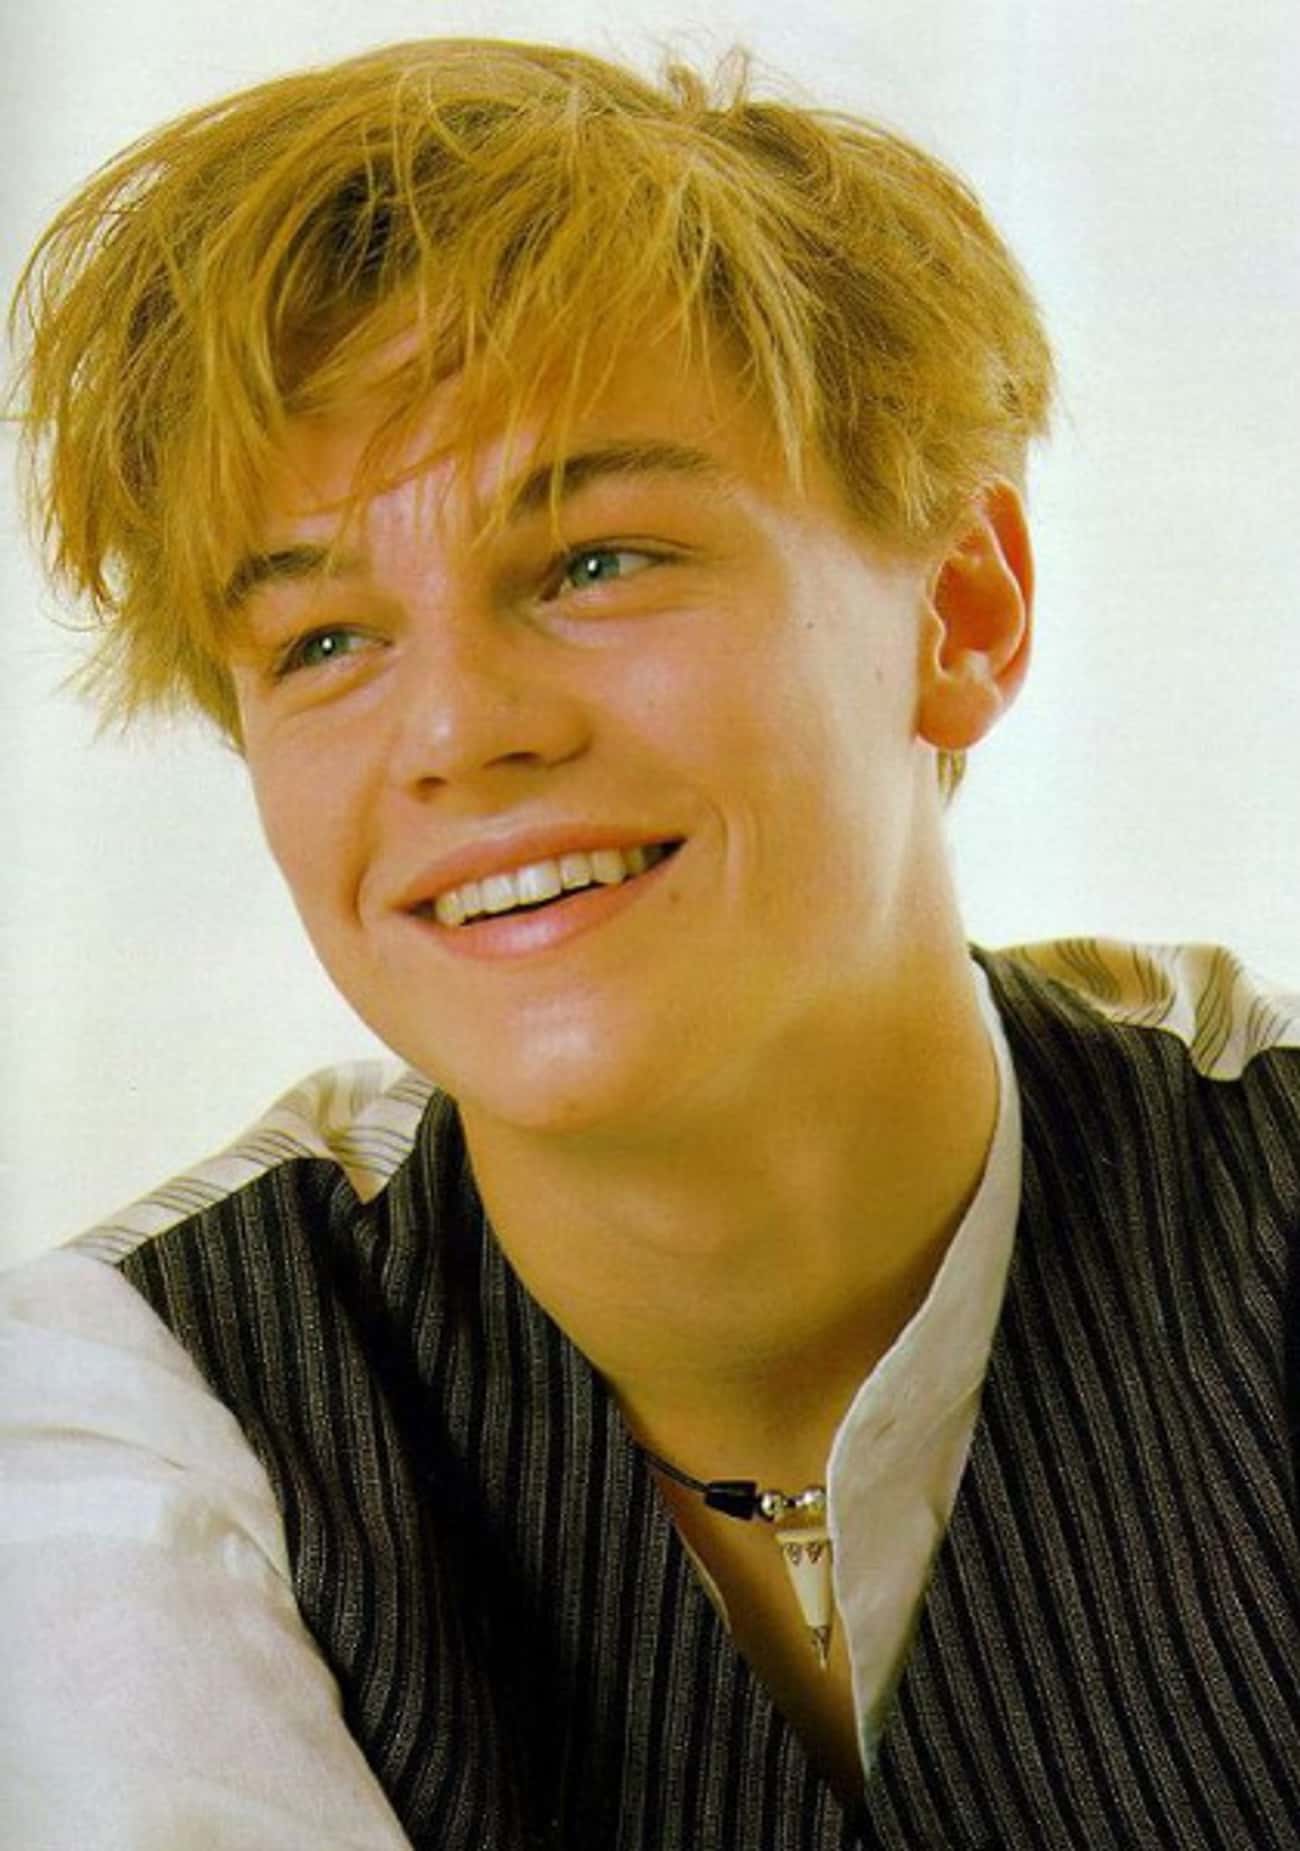 Young Leonardo DiCaprio Needs A Hair Cut